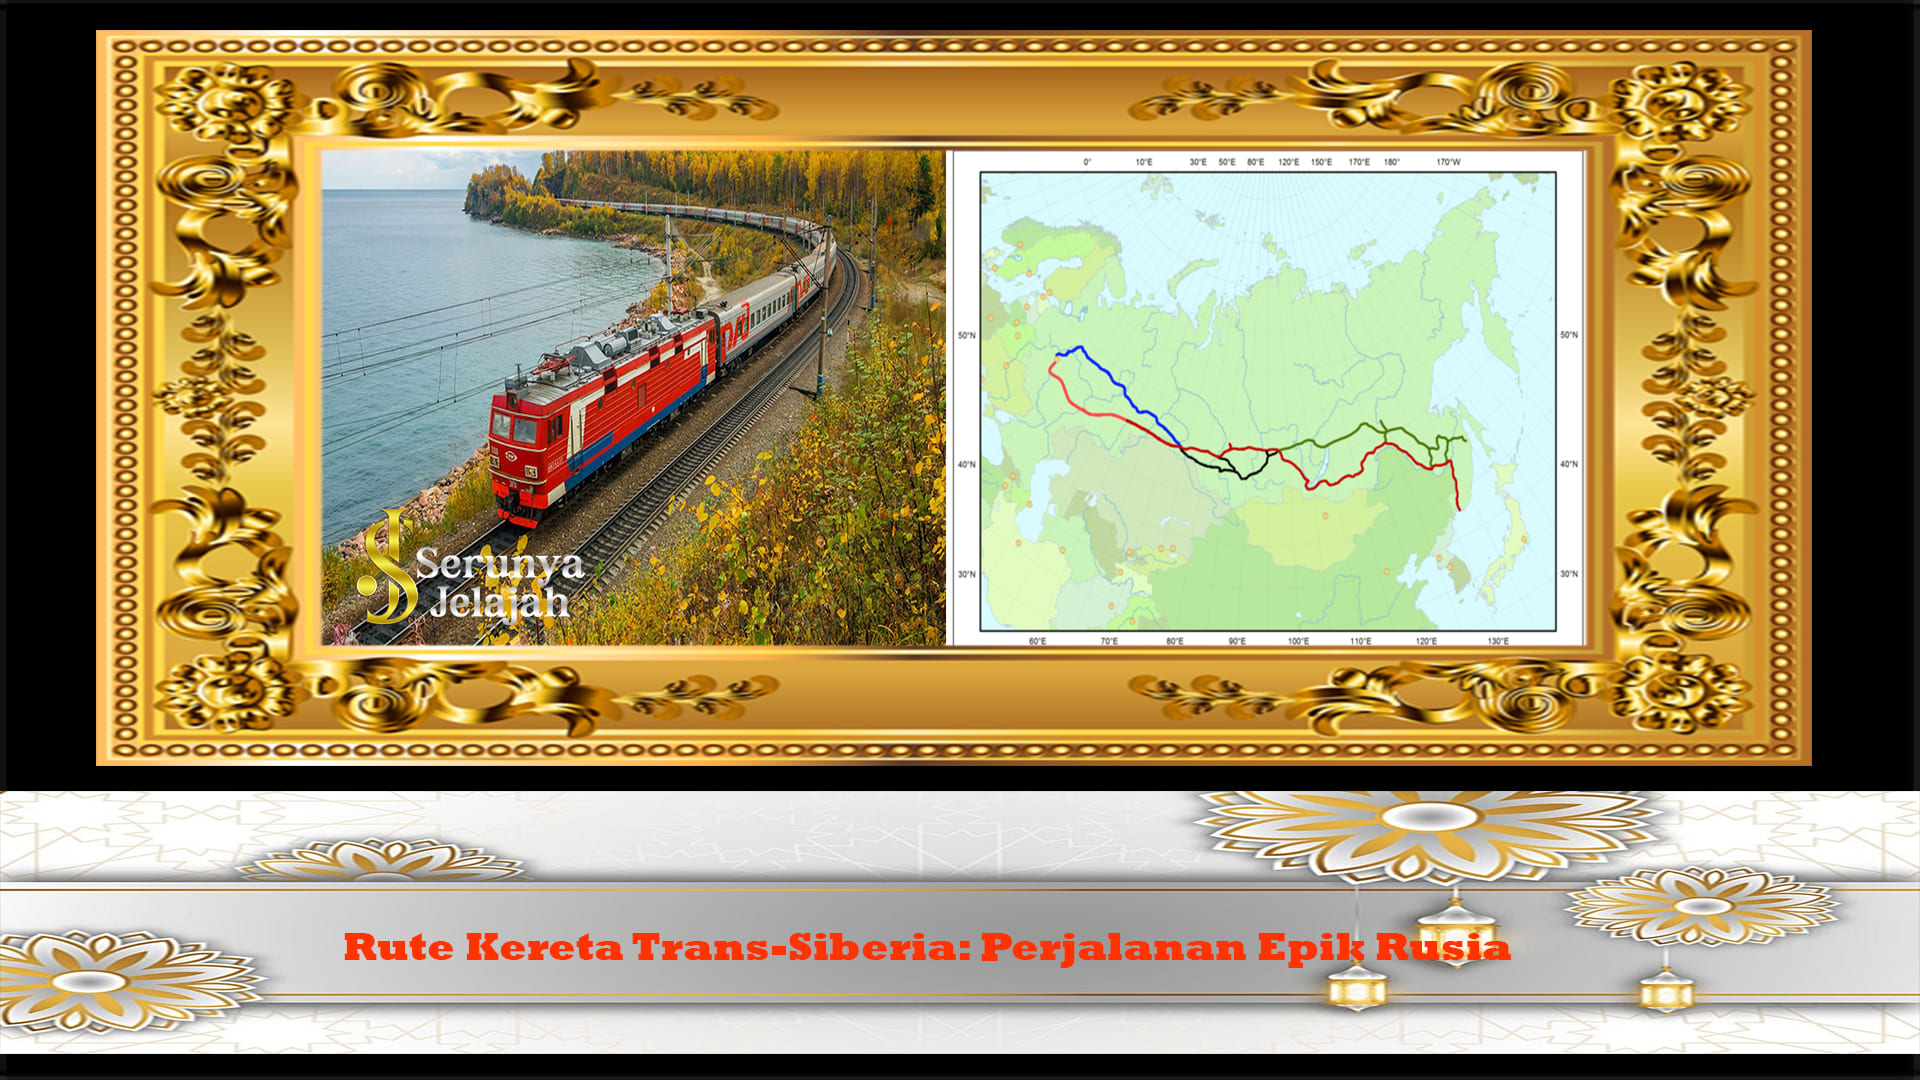 Rute Kereta Trans-Siberia: Perjalanan Epik Rusia